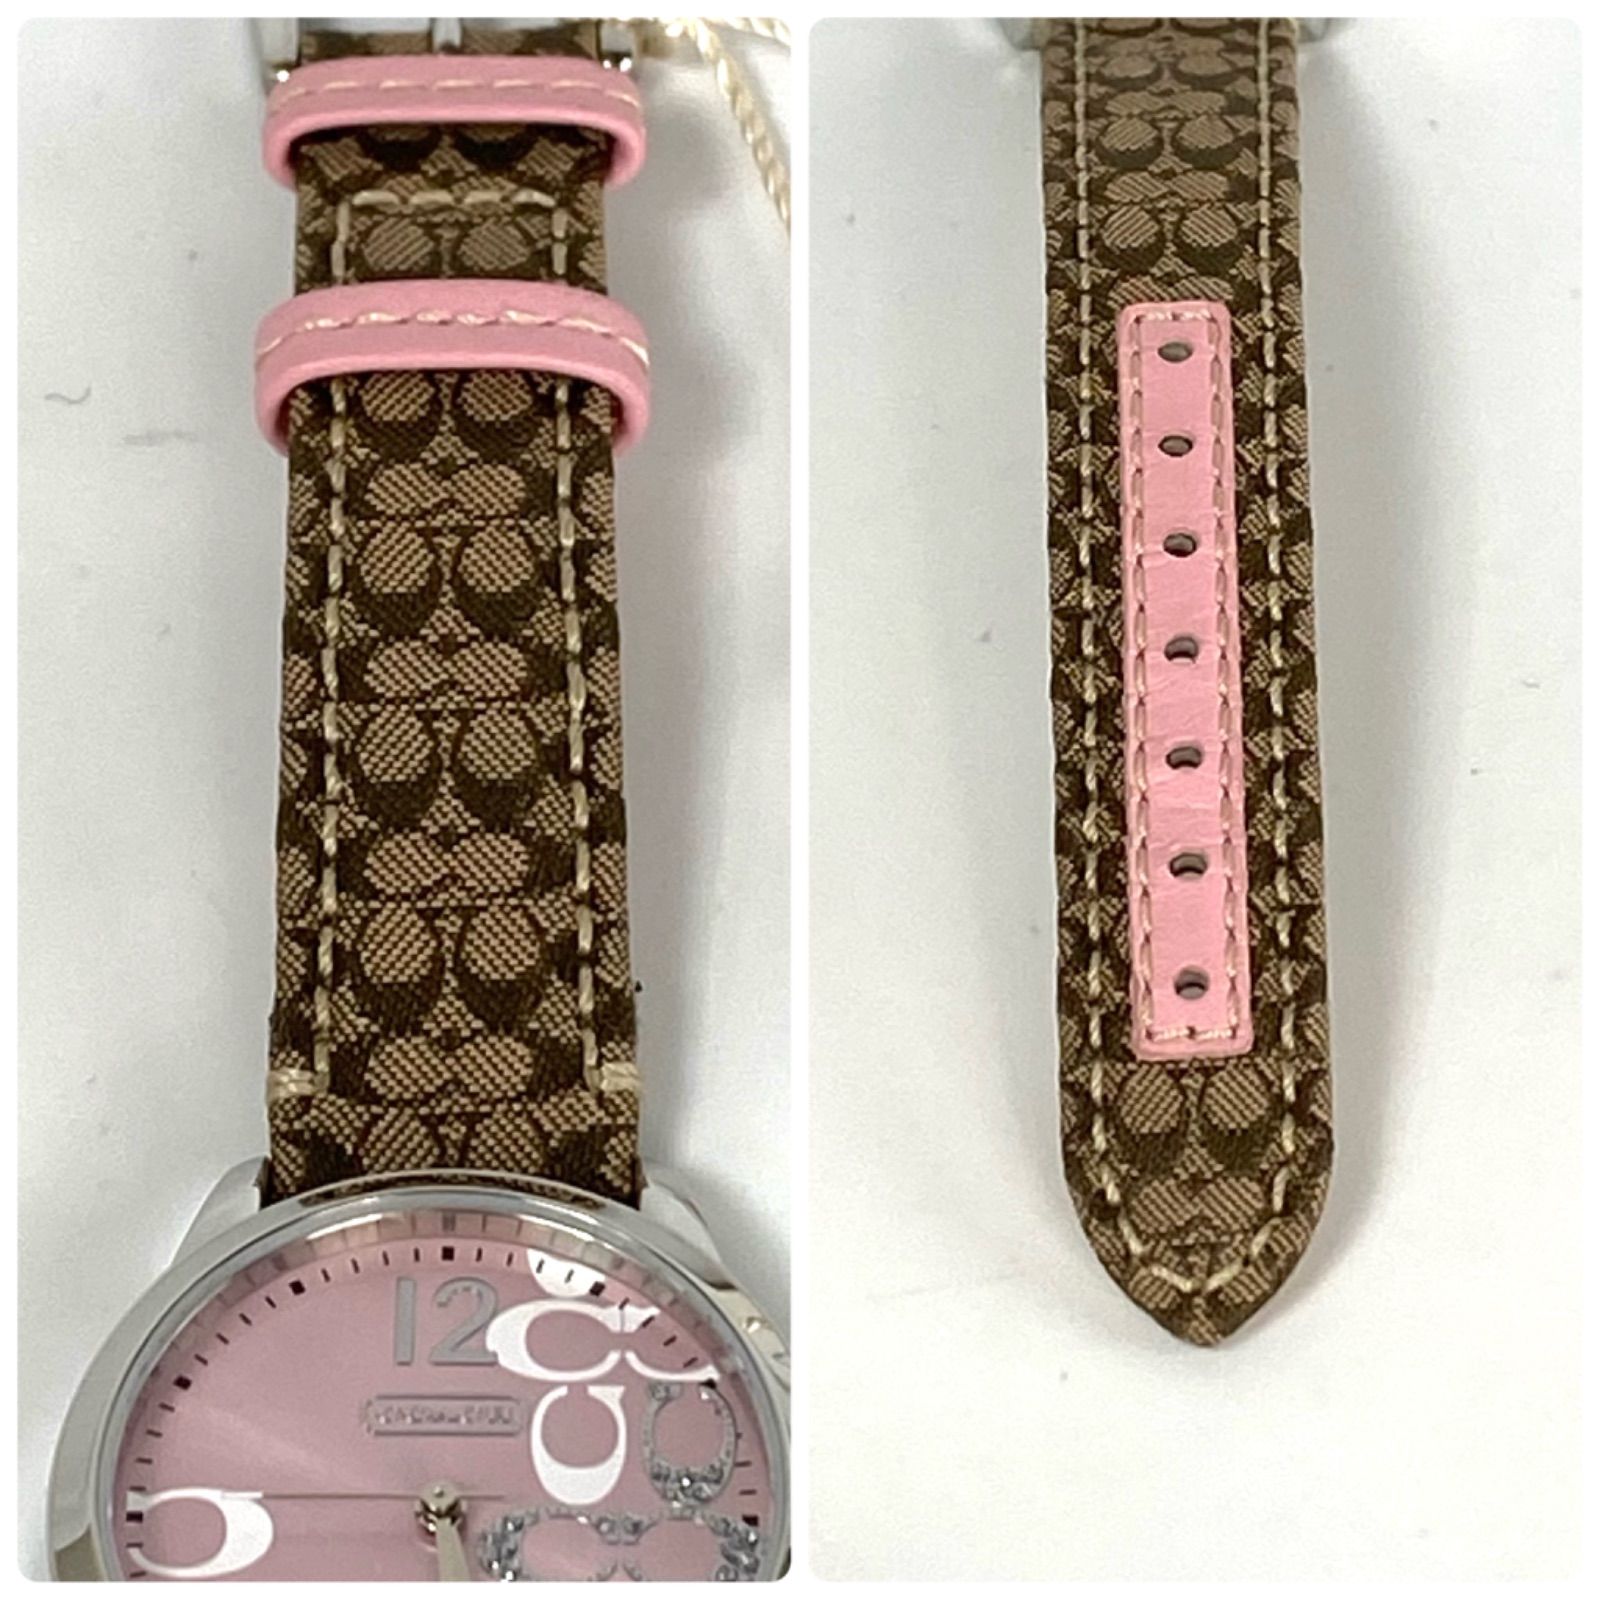 コーチ　COACH　腕時計　クォーツ　0647　ピンク　シグネチャー　革ベルト